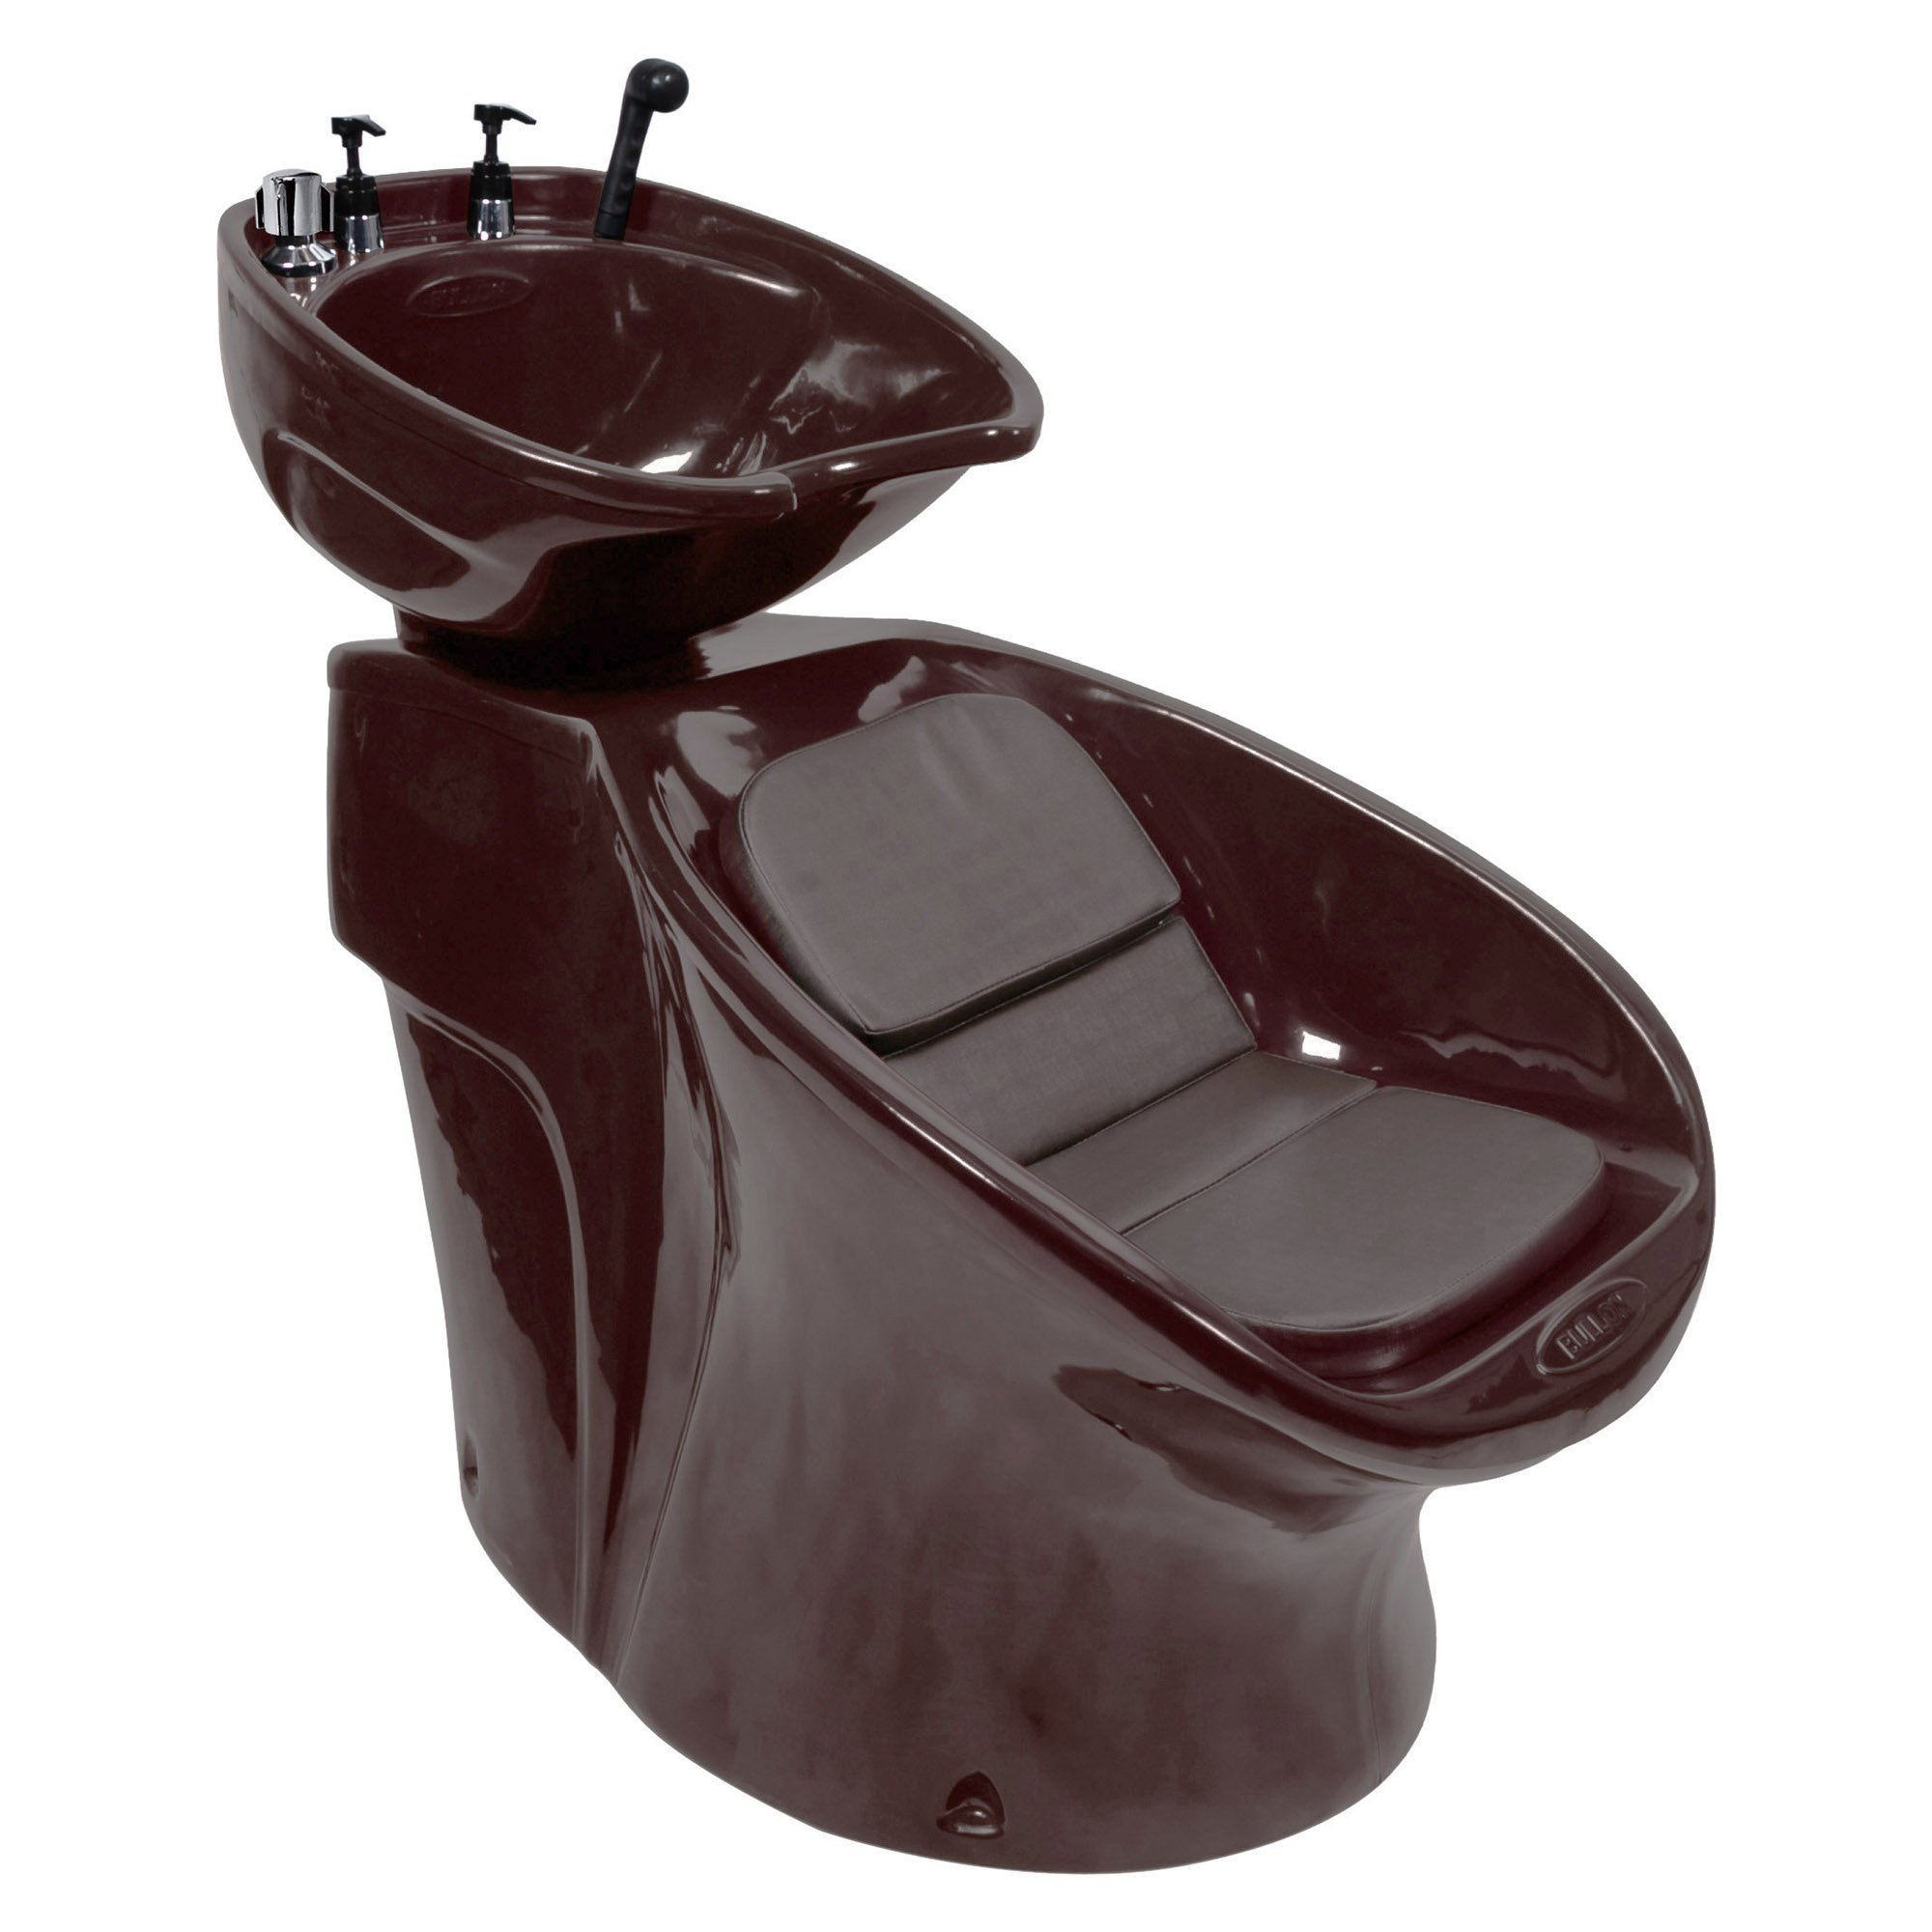 Lavatório Neon Shampoo + Cadeira Lotus Reclinável + Carrinho Auxiliar - Tabaco - 127 - 4